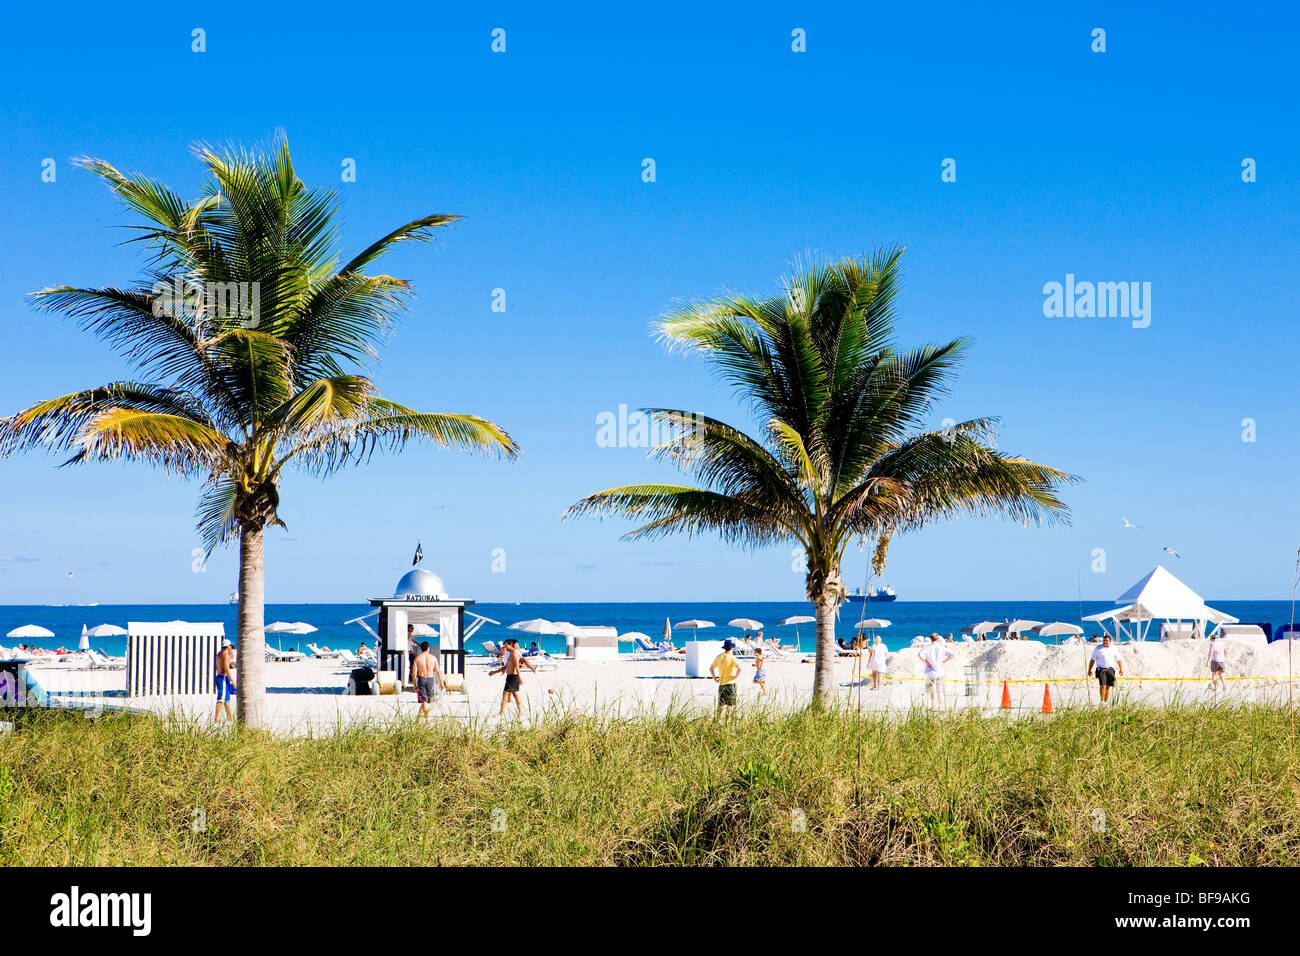 people on the beach, Miami Beach, Florida, USA Stock Photo